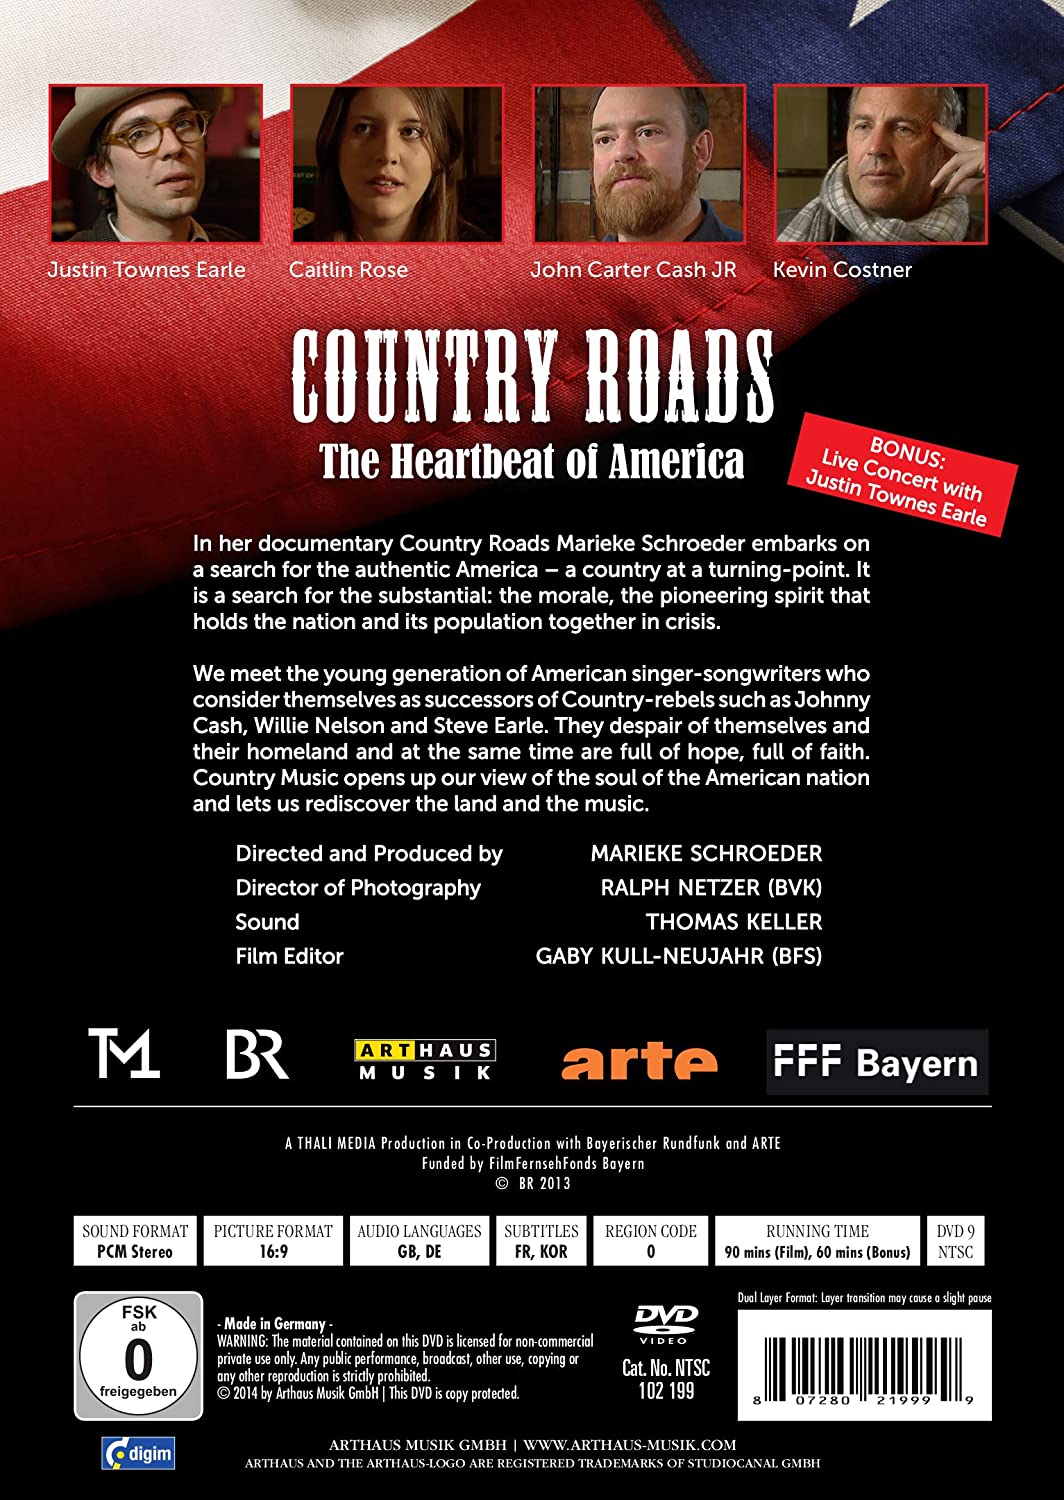 다큐멘터리 '컨트리 로드 - 아메리카의 맥박' : 저스틴 타운즈 얼 라이브 콘서트 (Country Roads - The Heartbeat Of America) 